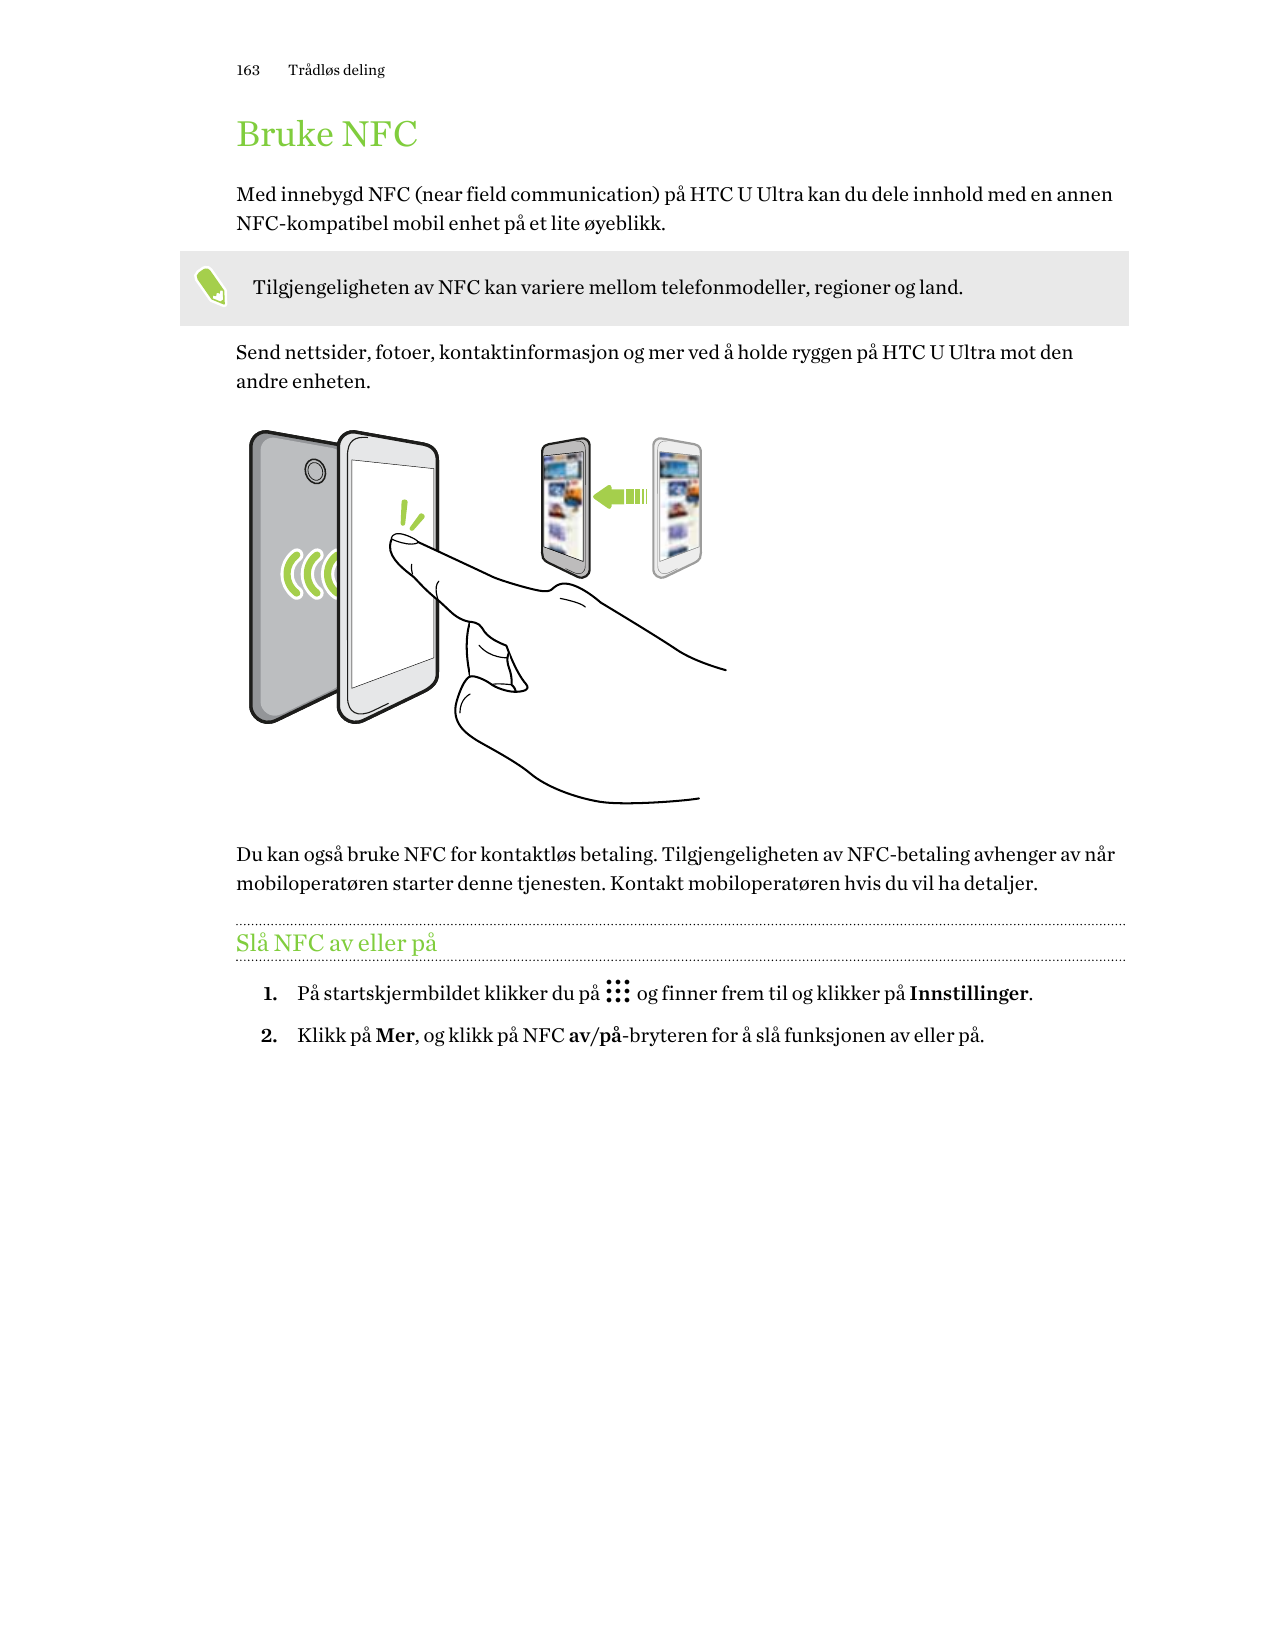 163Trådløs delingBruke NFCMed innebygd NFC (near field communication) på HTC U Ultra kan du dele innhold med en annenNFC-kompati